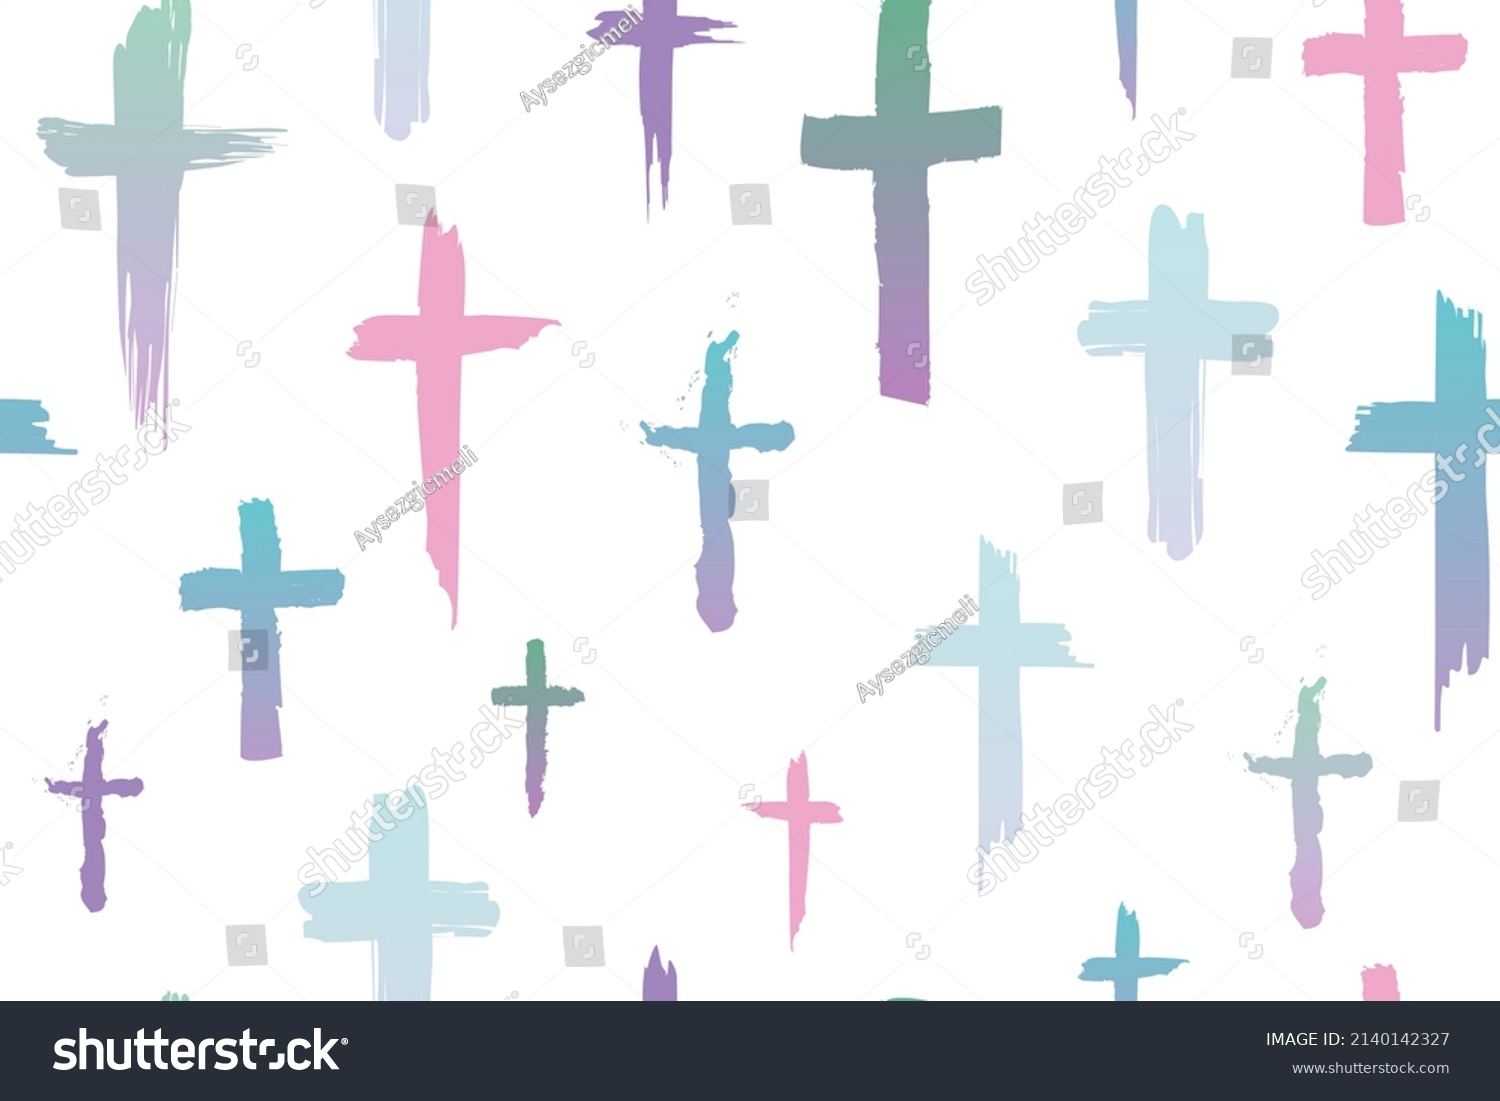 Beautiful Christian Cross Signs Watercolor Drawings Stock Vector ...